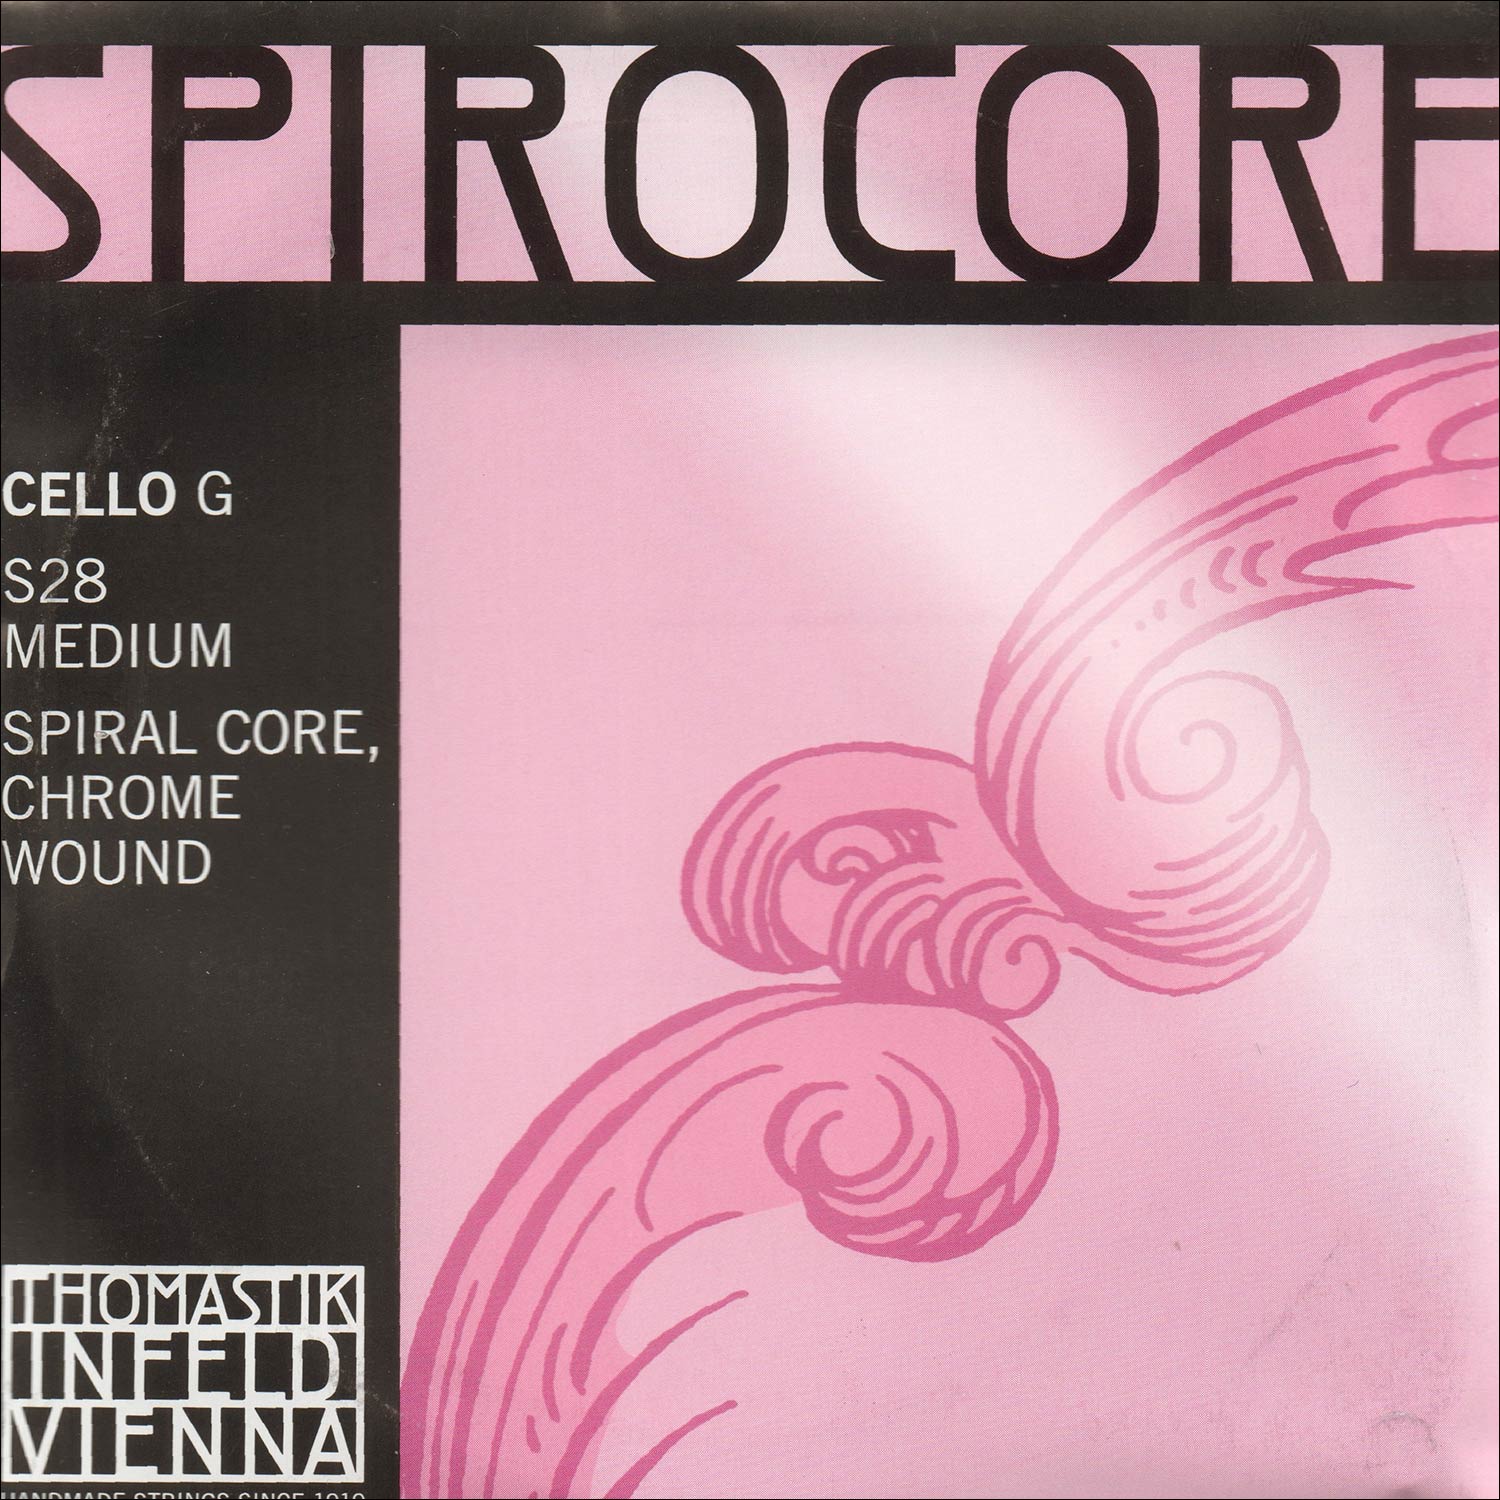 Spirocore Cello G - chr/steel: Medium